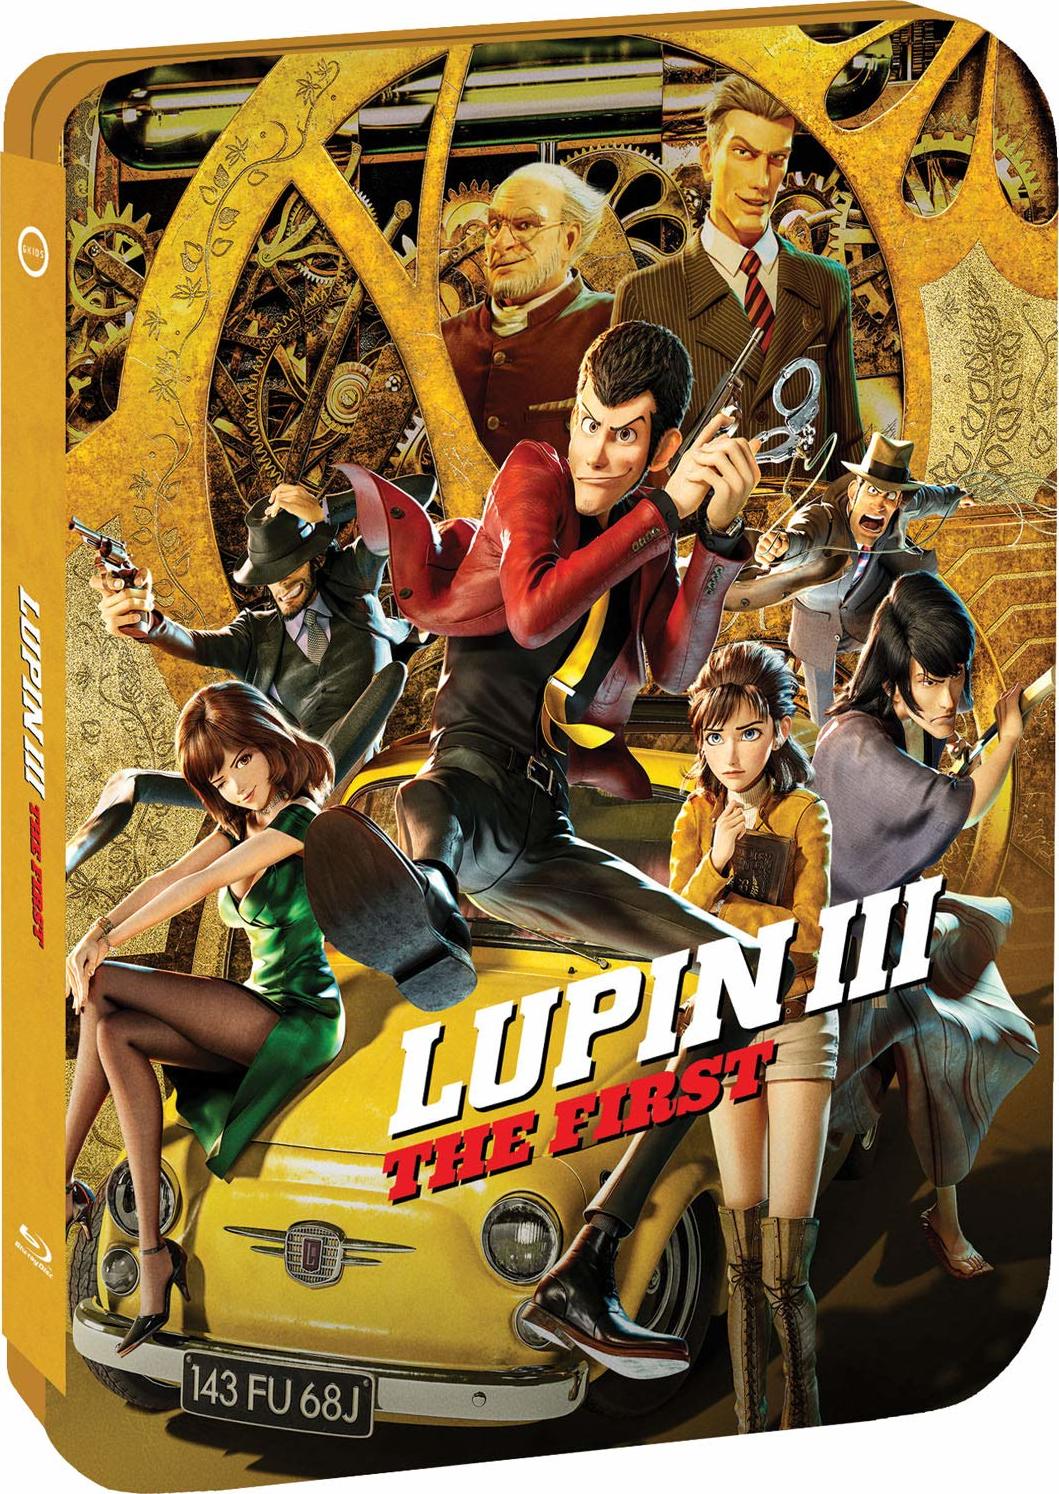 Lupin III: The First (Blu-ray)